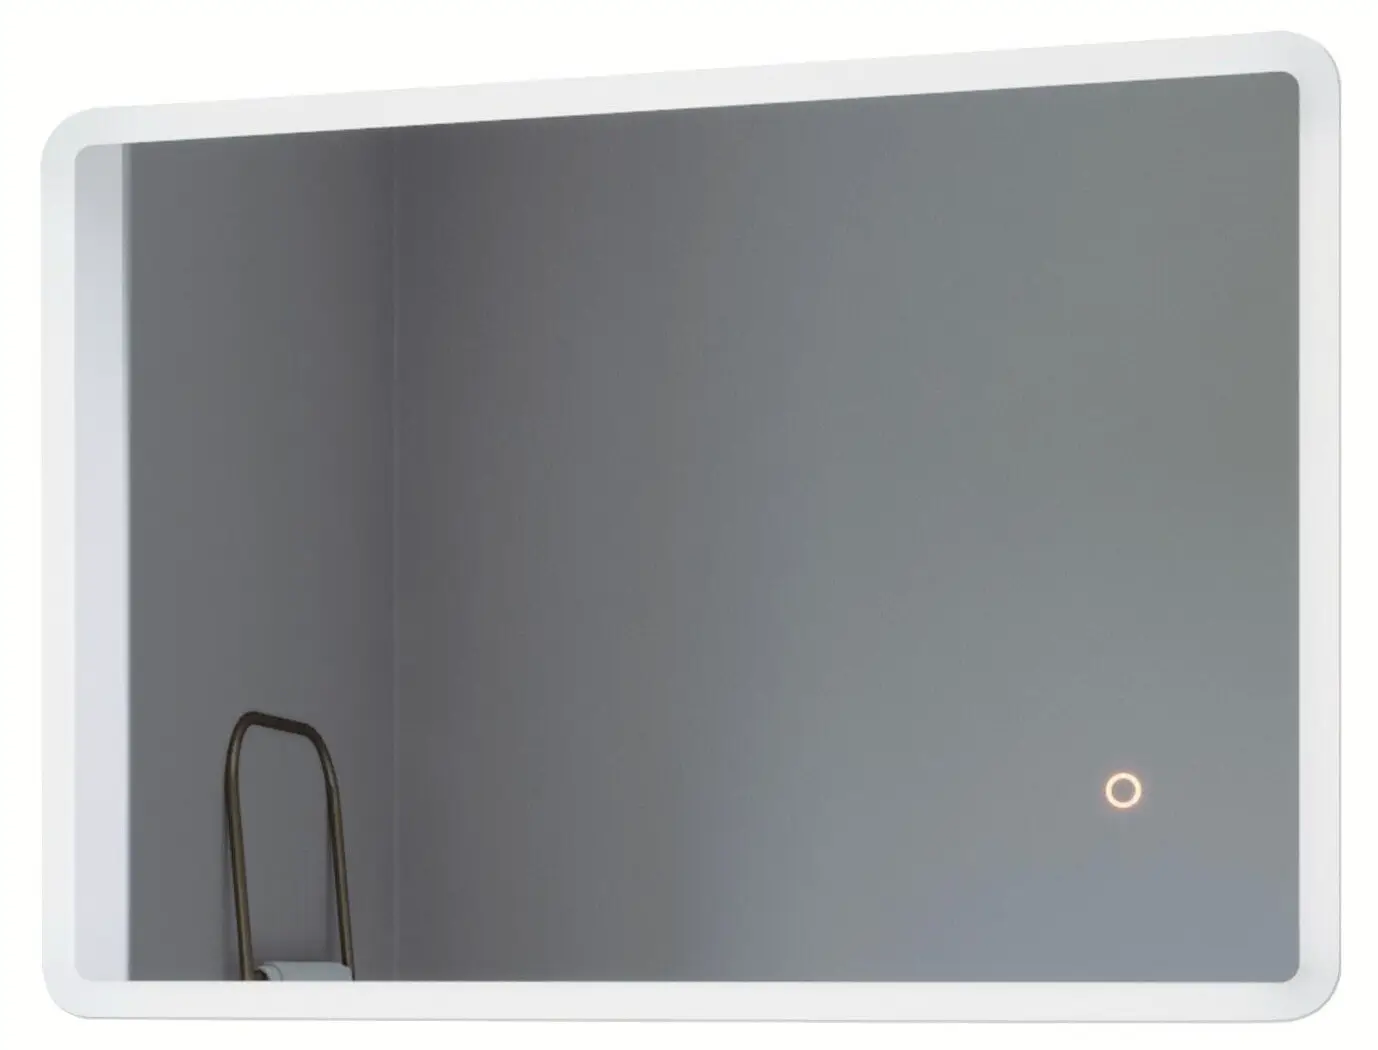 Extrem beliebter Online-Verkauf von Neuware LED Badspiegel Beleuchtung BORAS mit